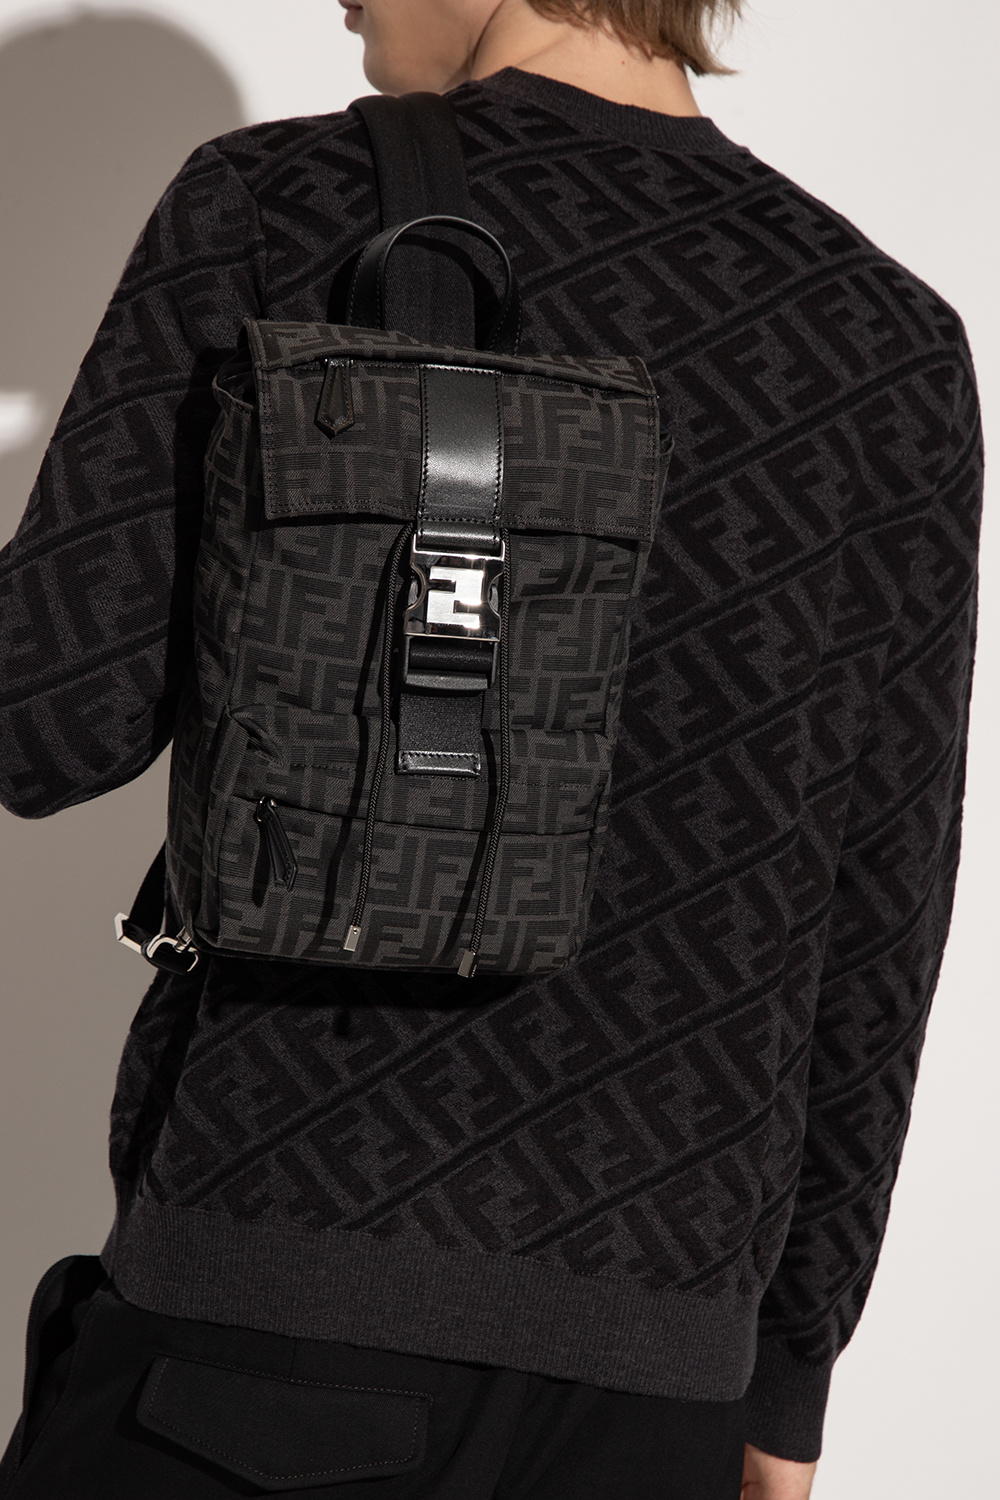 Fendi One-shoulder backpack with monogram